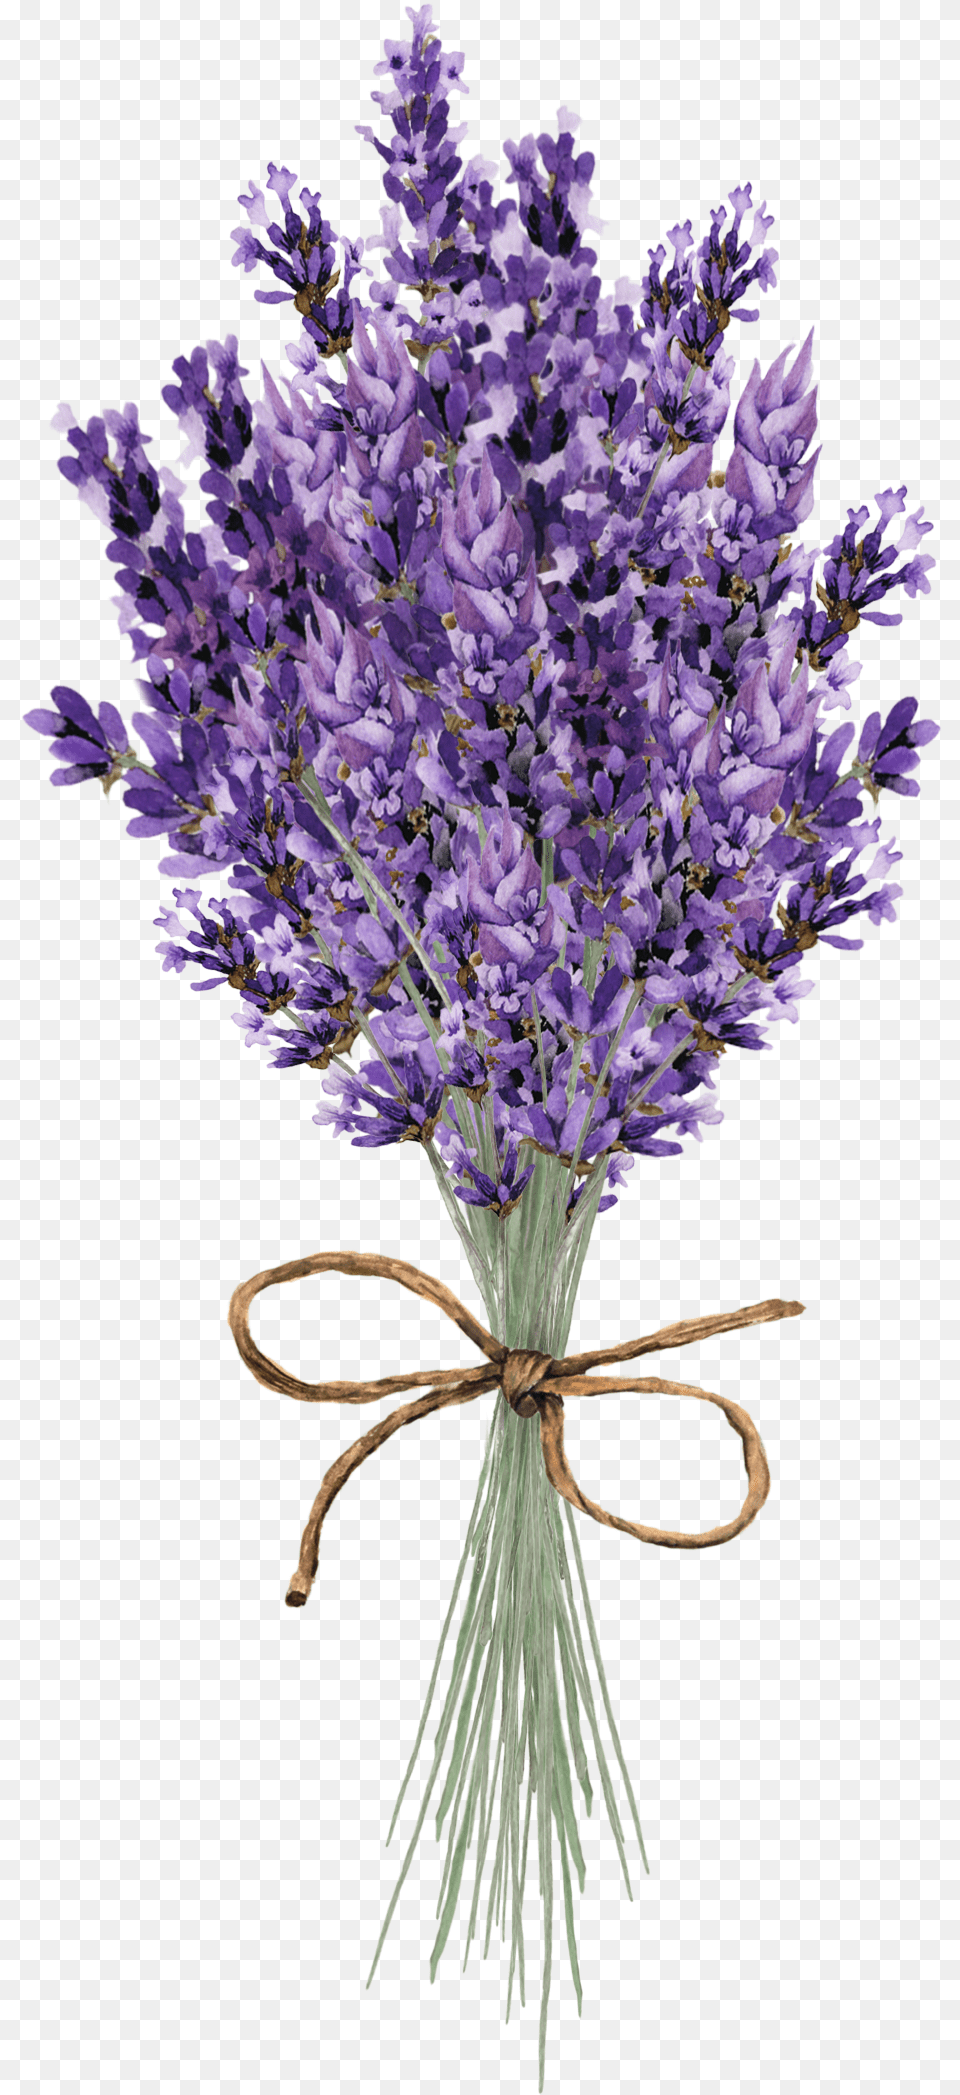 Image, Flower, Lavender, Plant Free Transparent Png